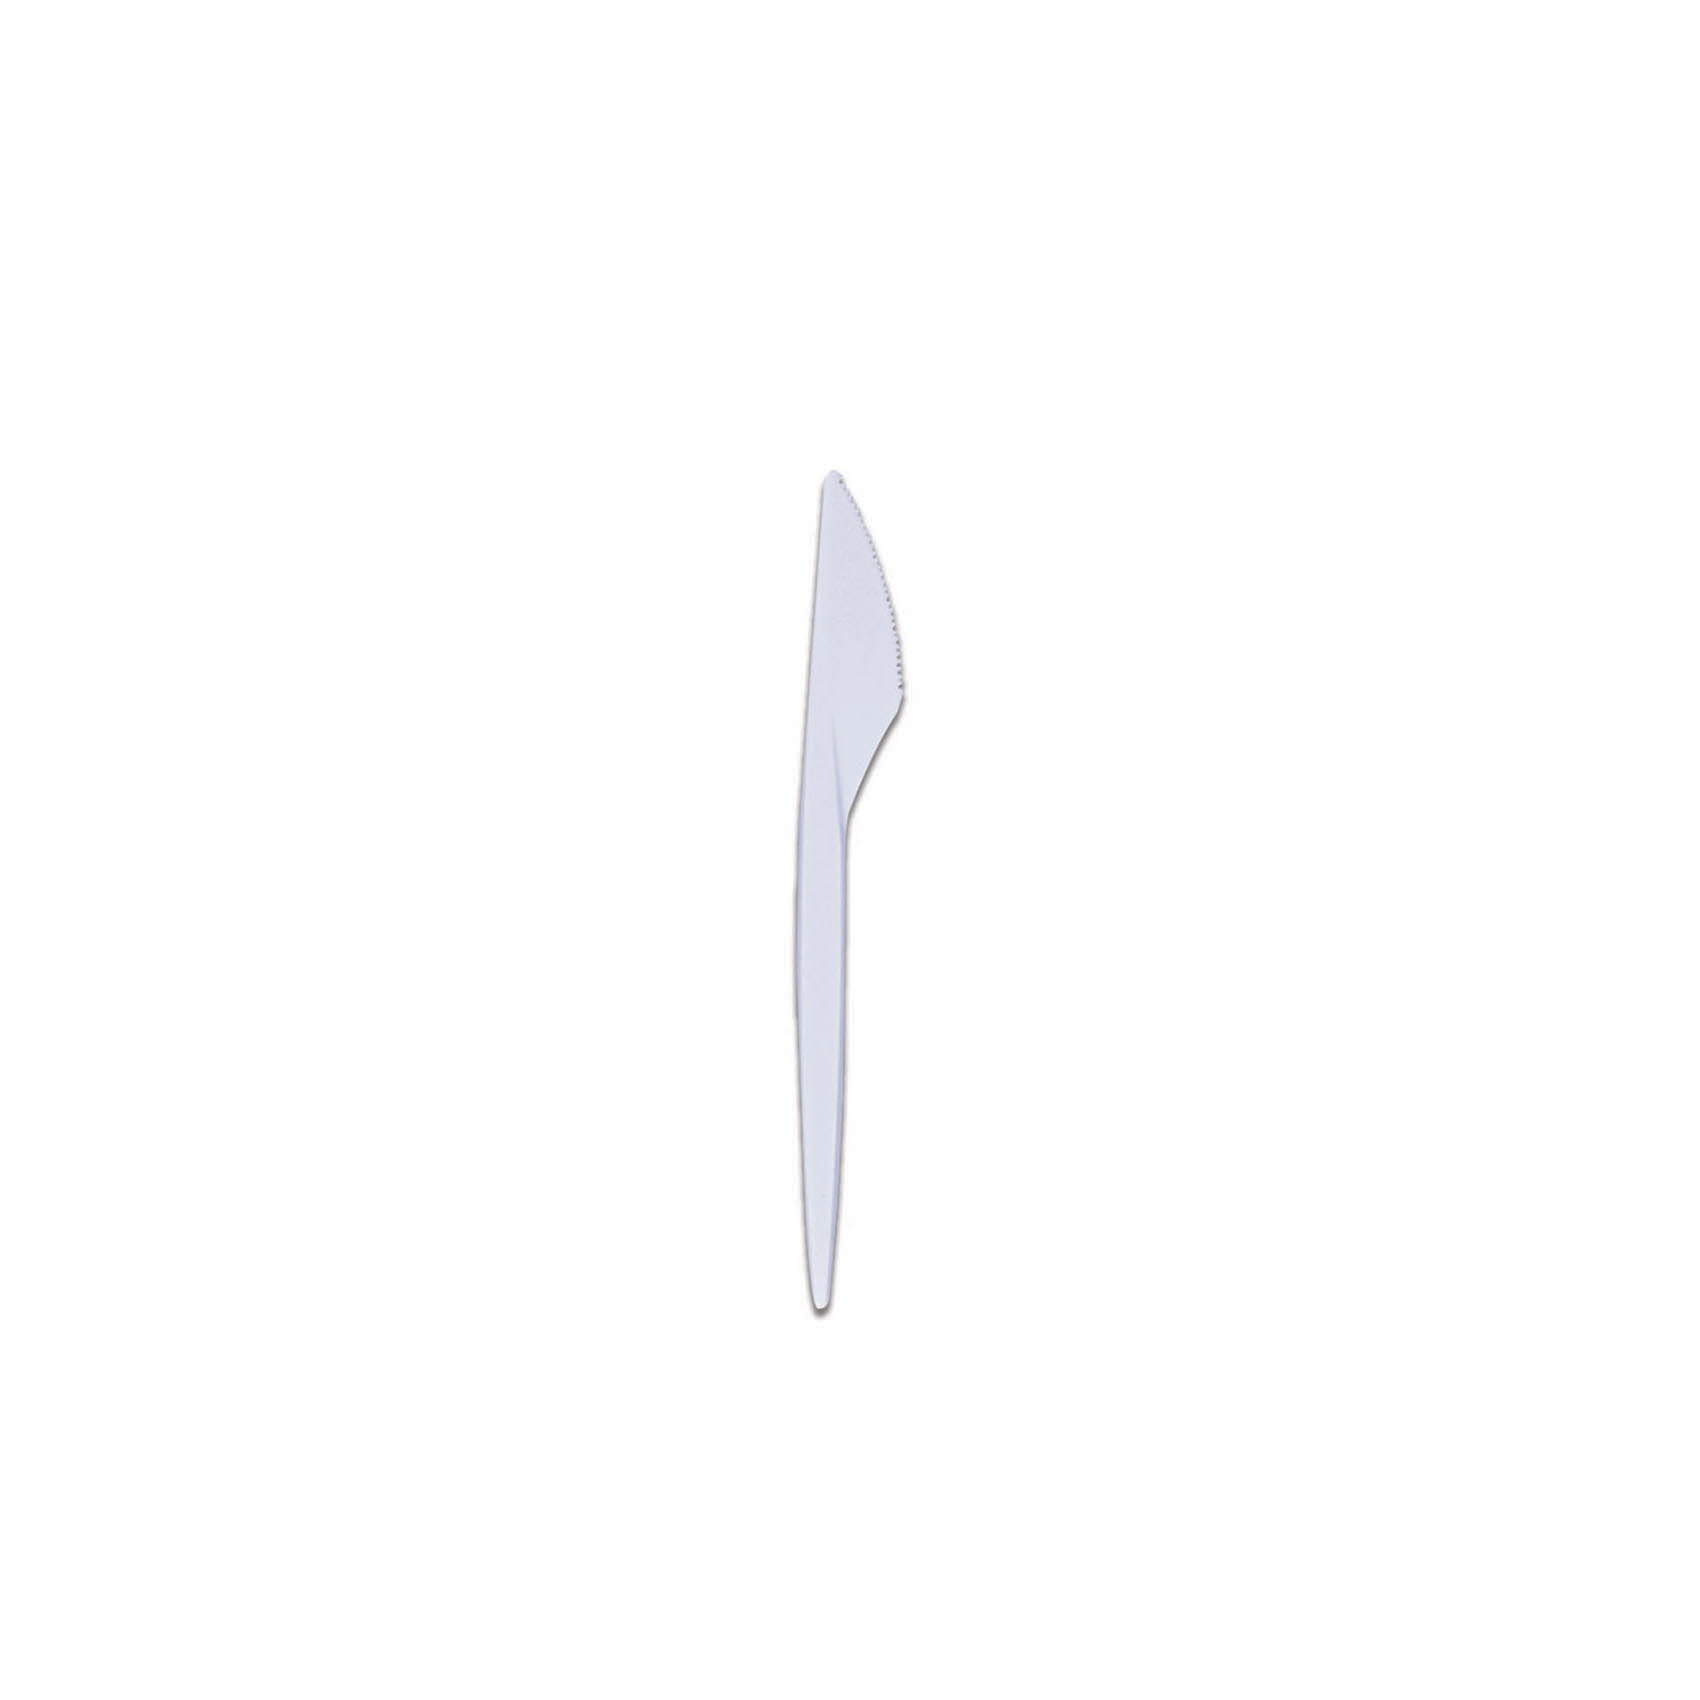 ماي تشويس سكاكين بلاستيكية للإستعمال مرة واحدة 200 قطعة - أبيض